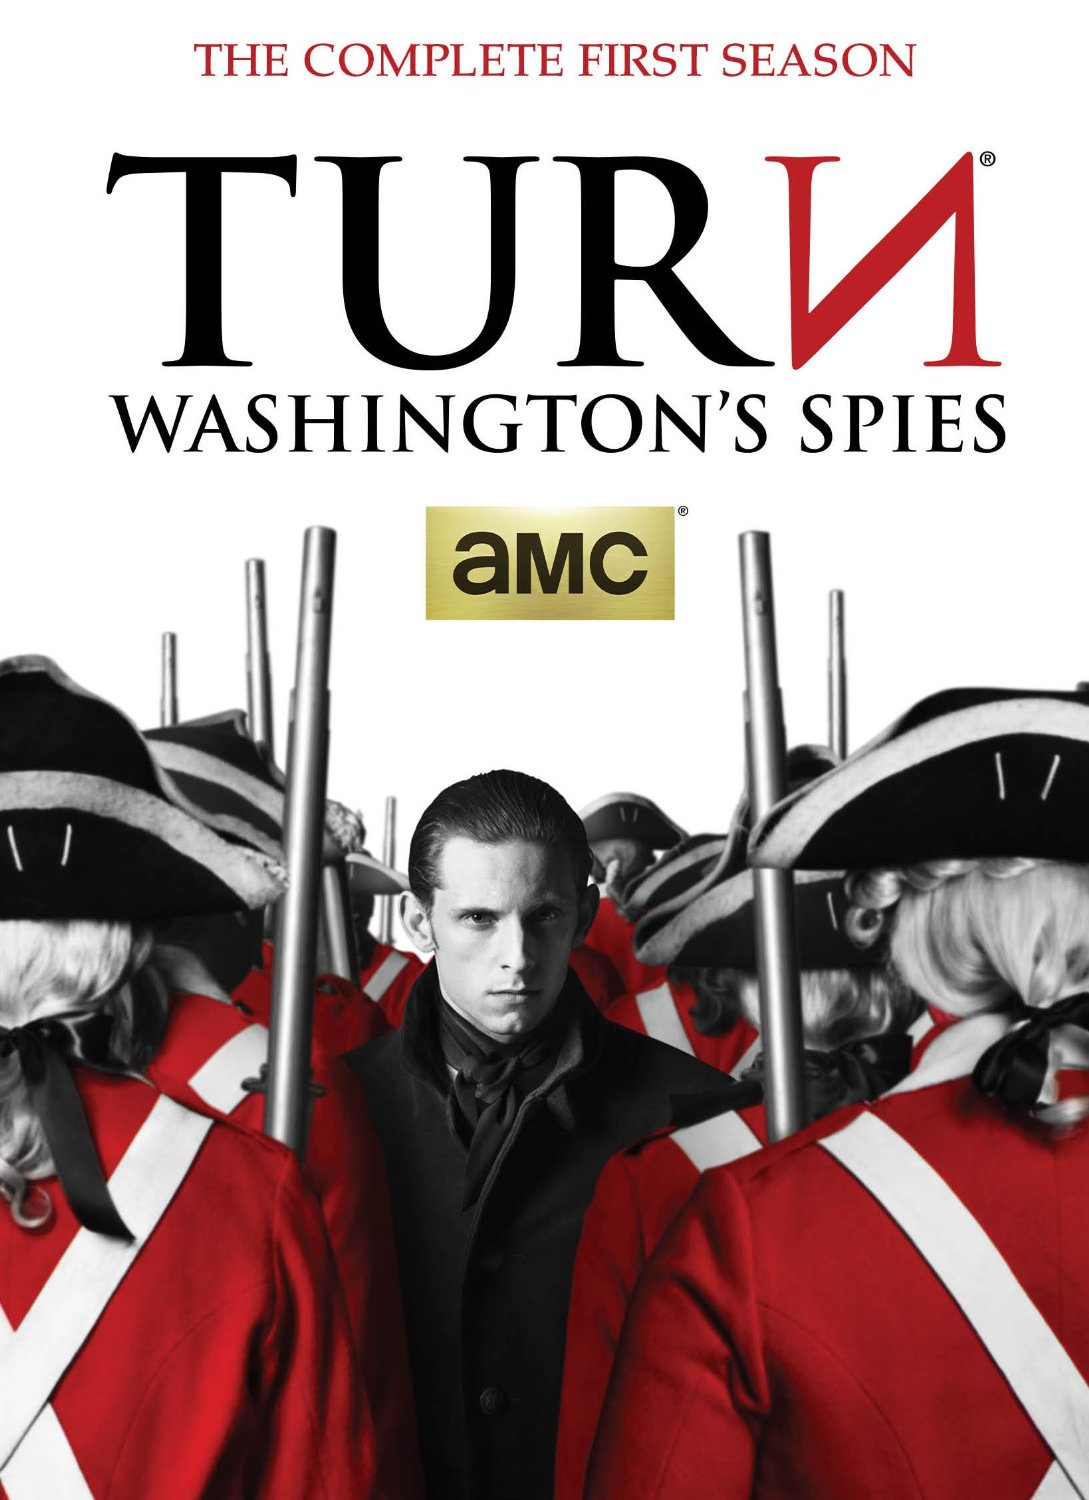 Posūkis. Vašingtono šnipai 1 sezonas / TURN: Washingtons Spies (season 1)